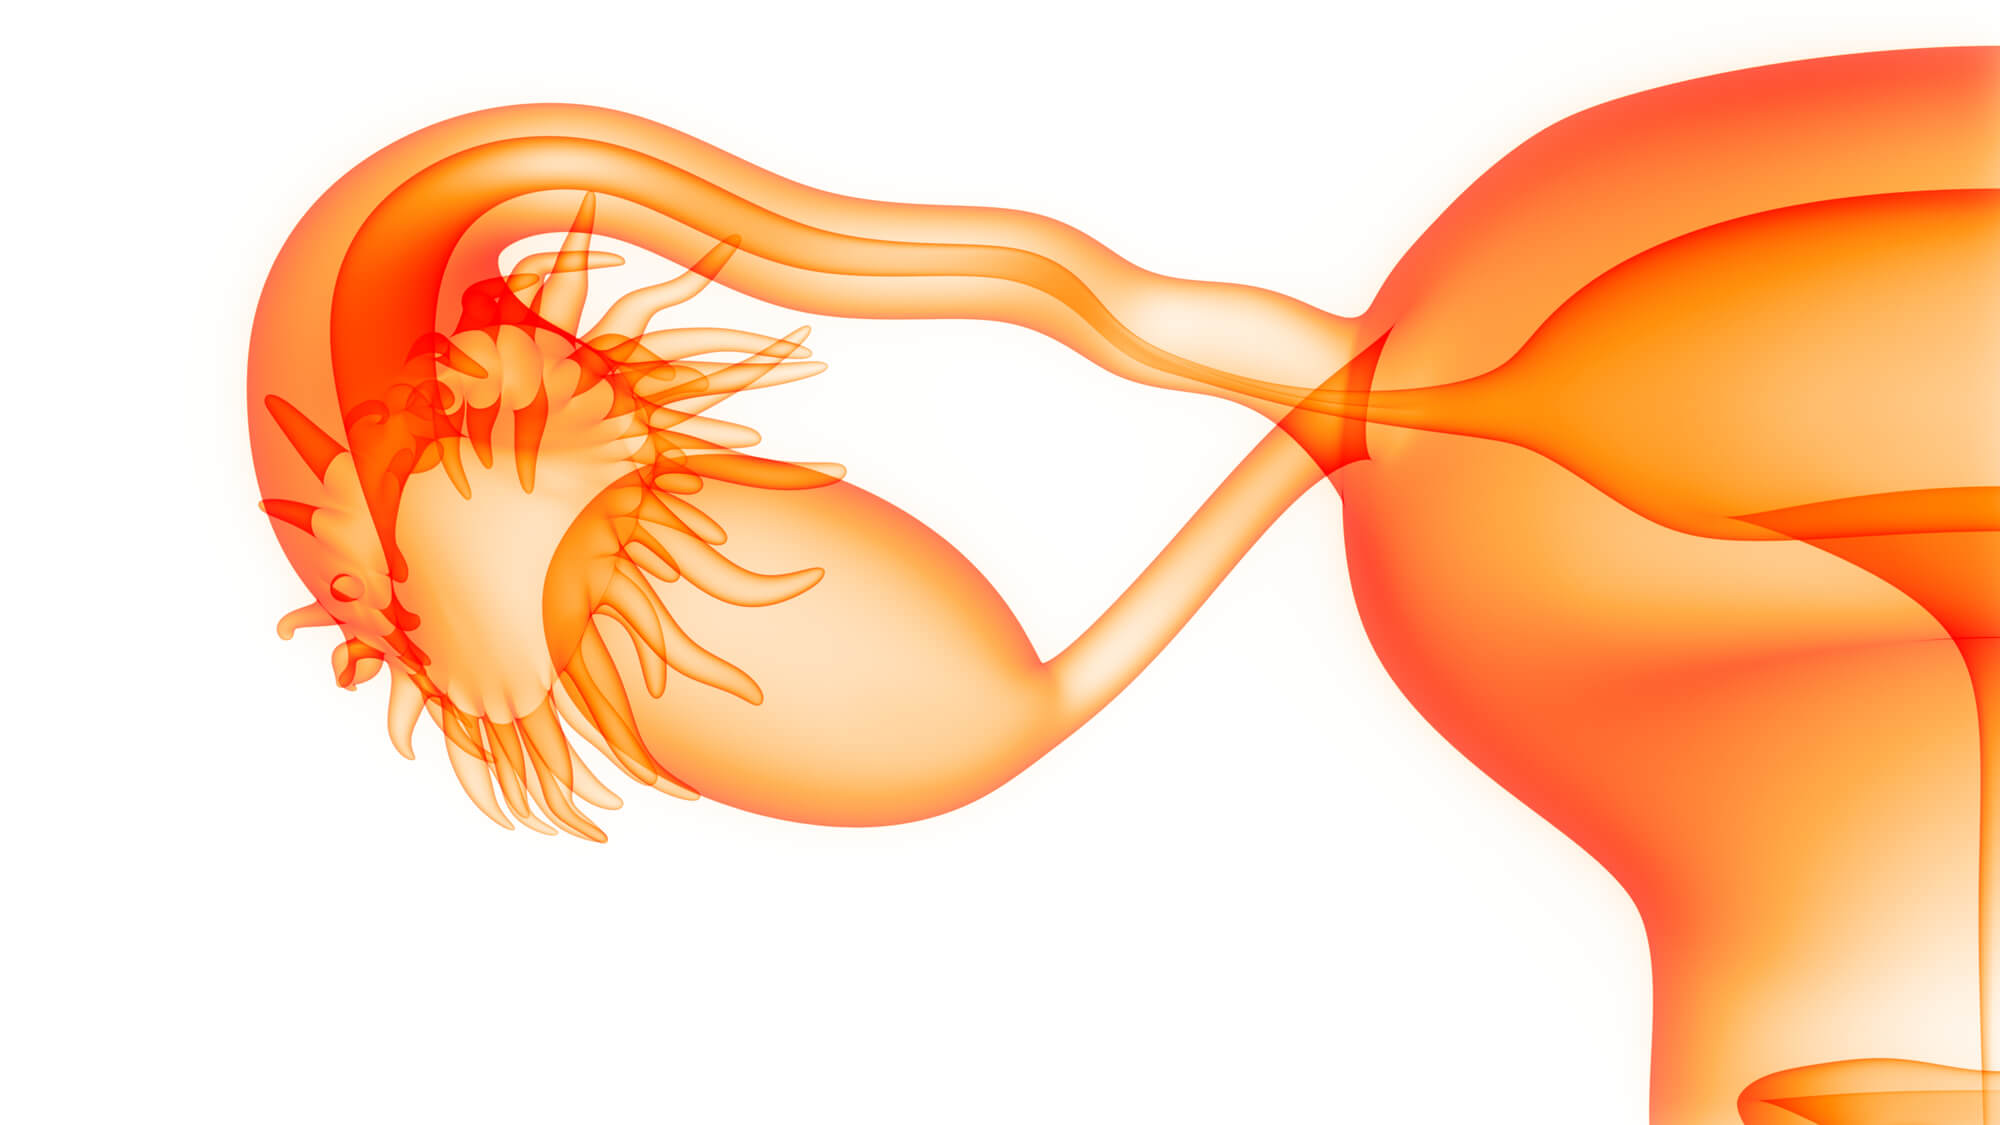 卵巢早衰的治疗方法